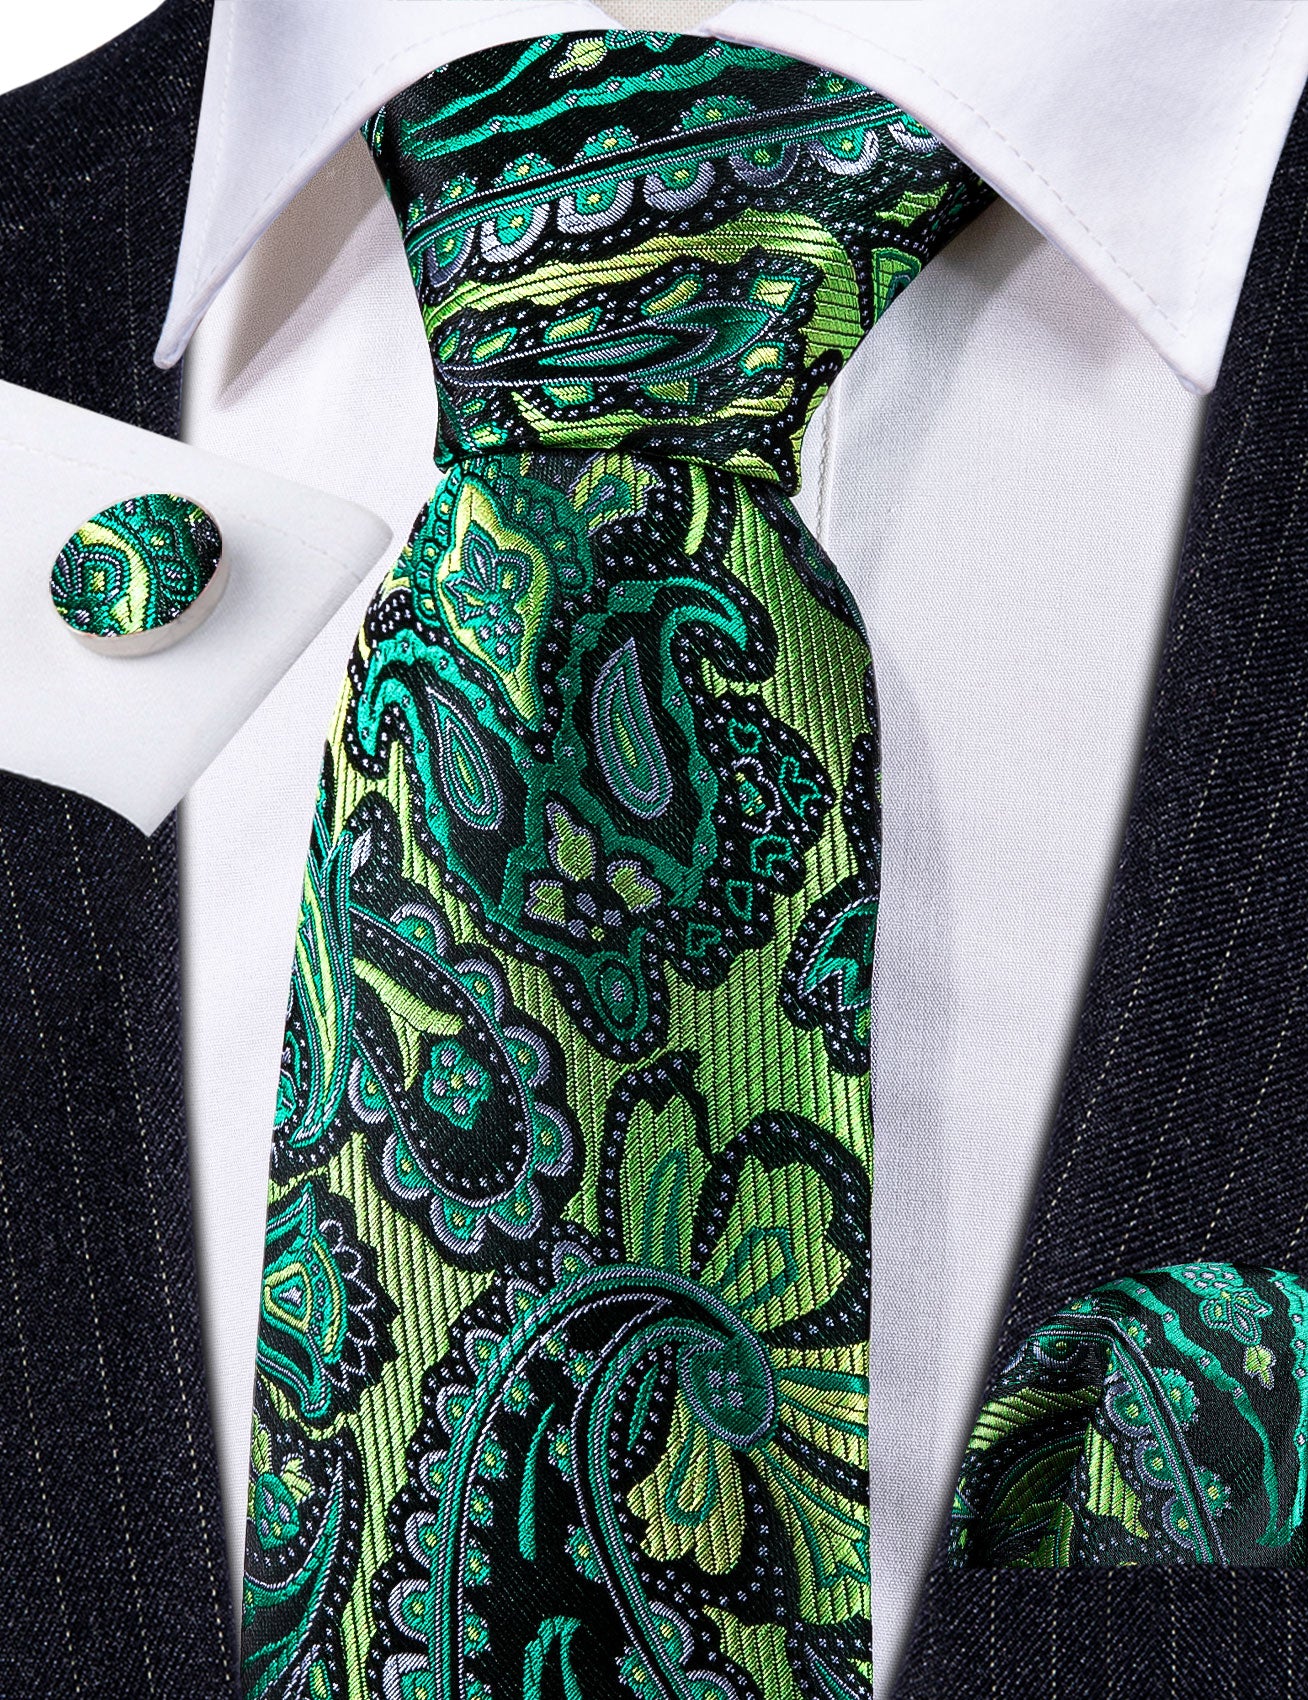 Barry.wang Green Tie Paisley Silk Men's Tie Handkerchief Cufflinks Set